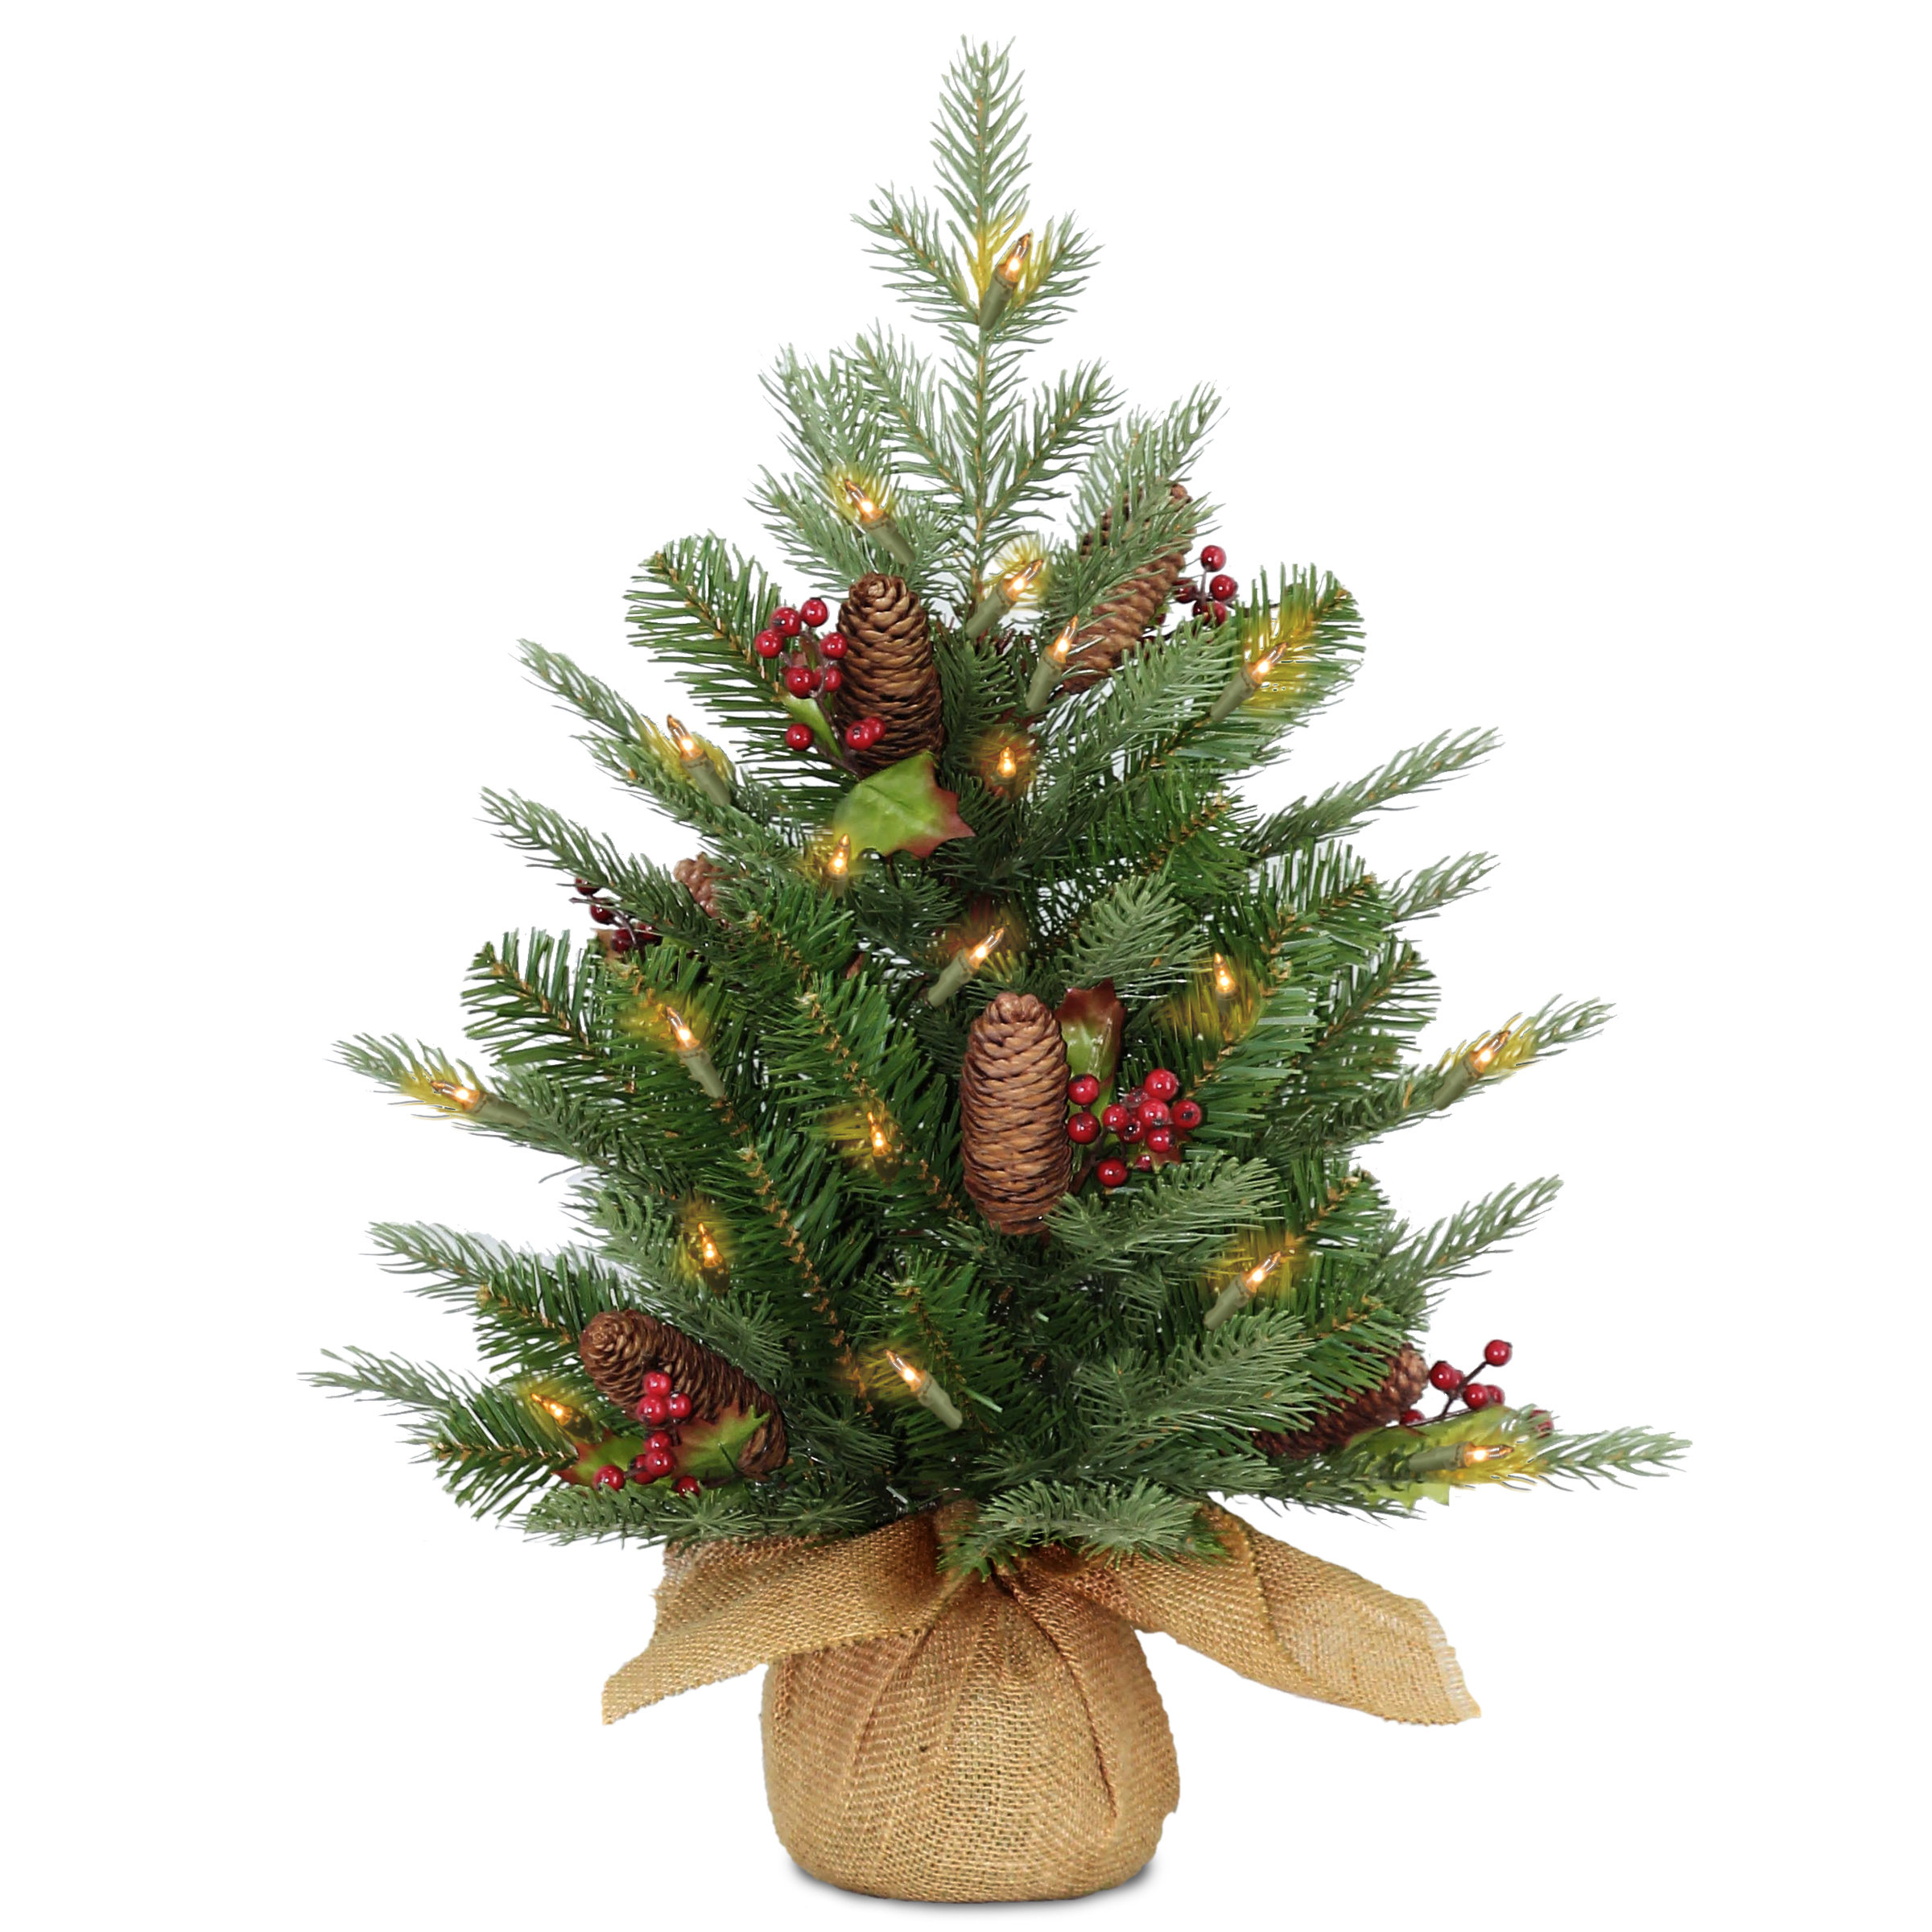  Mercury Glass Christmas Tree, 2-Pack Lighted Xmas Tree